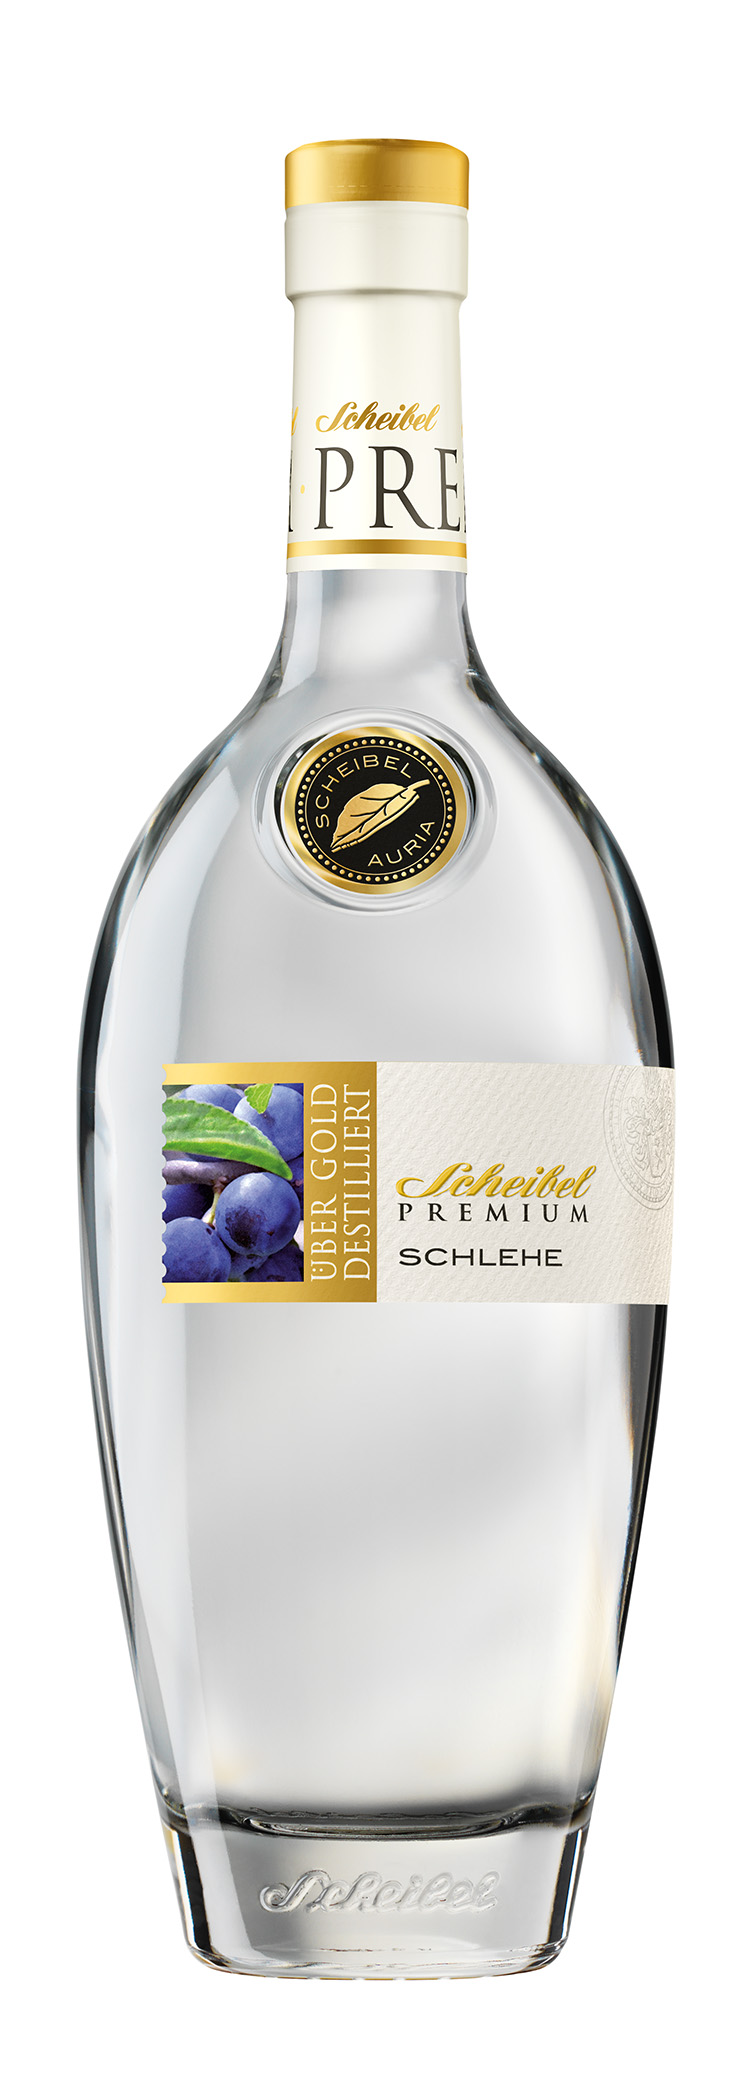 Scheibel Premium Schlehe-0